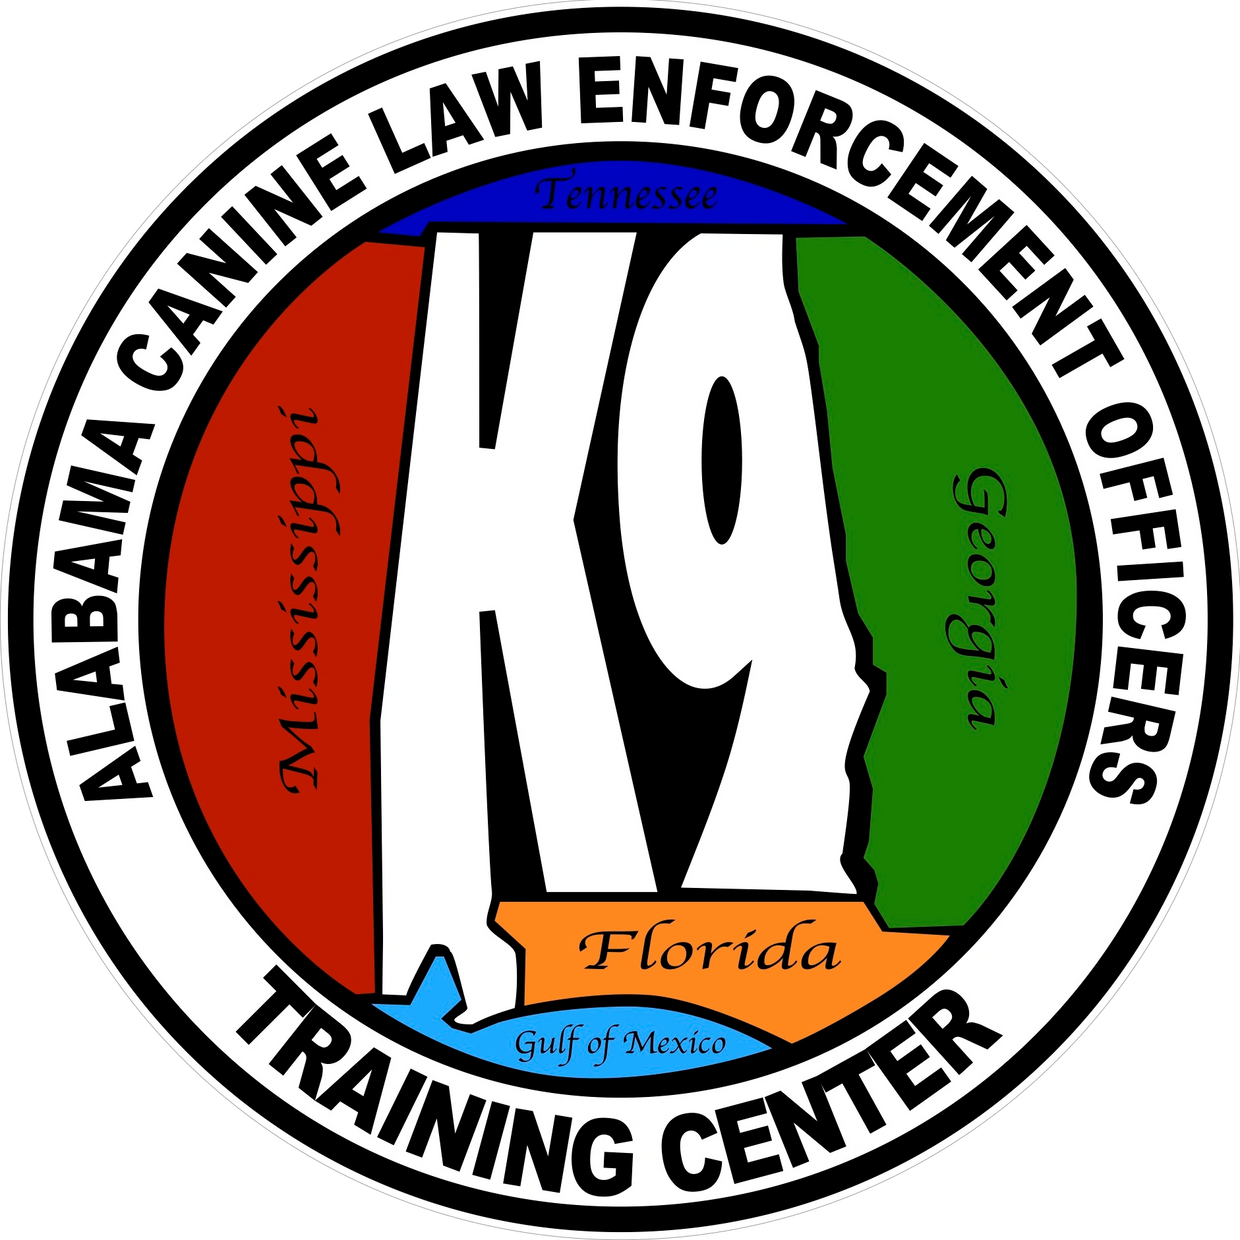 Alabama Canine, Police K9, Security K9, Explosive Detection, Patrol K9, Narcotics K9, K9 Training.